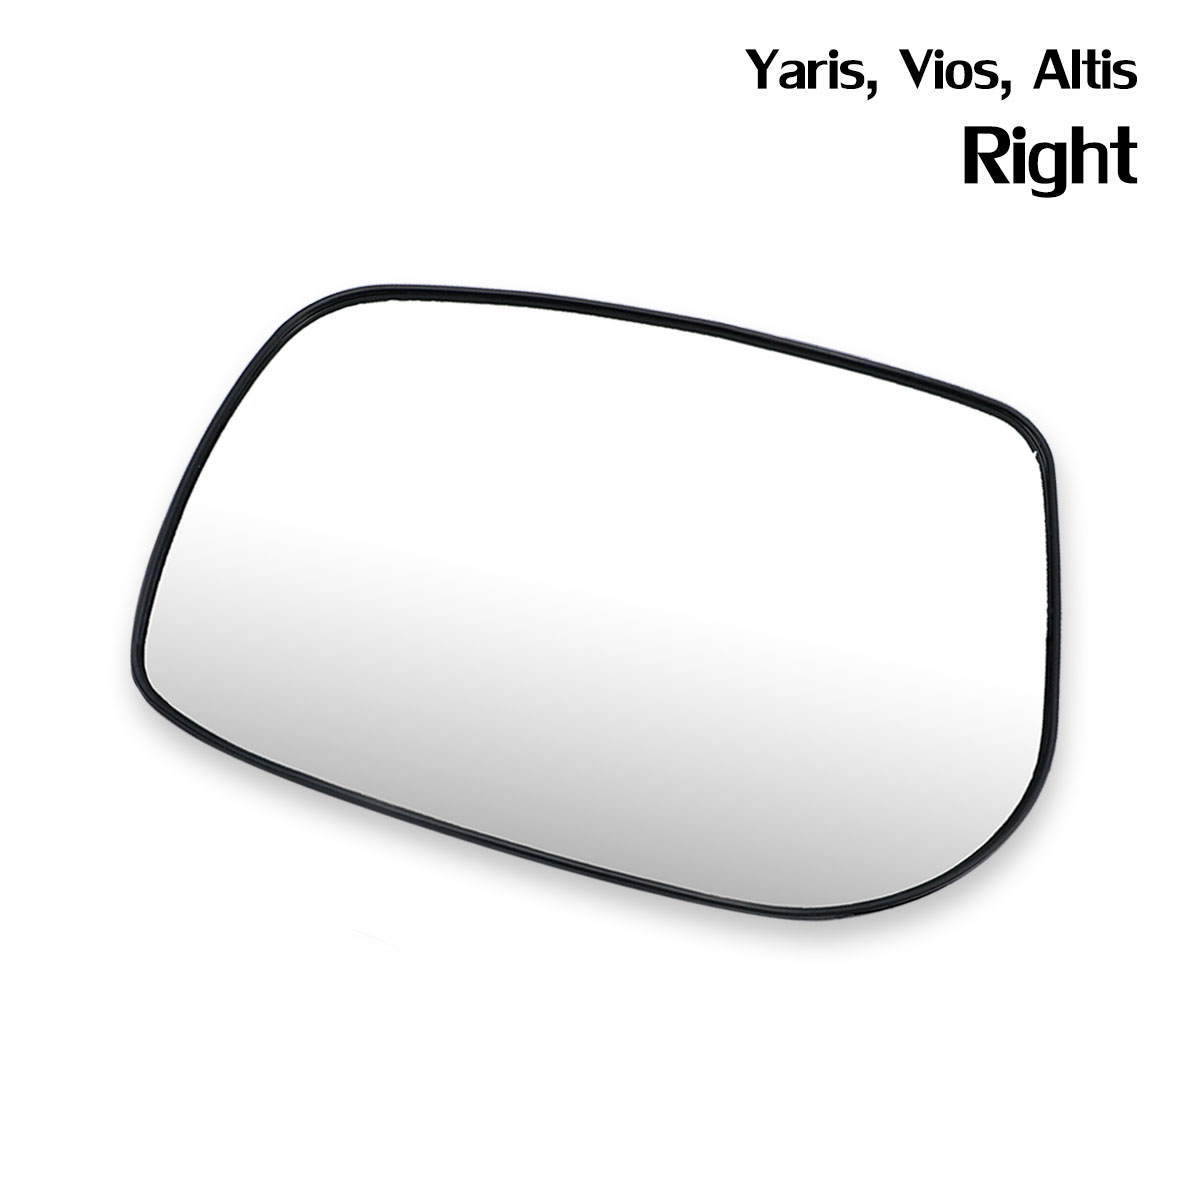 เนื้อเลนส์กระจก ข้าง ขวา ใส่ Yaris,Vios, Altis ปี 2007-2013 Right Wing Side Door Mirror Glass Len Yaris,Vios, Altis COROLLA E140 VIOS XP90 VITZ YARIS Toyota บริการเก็บเงินปลายทาง